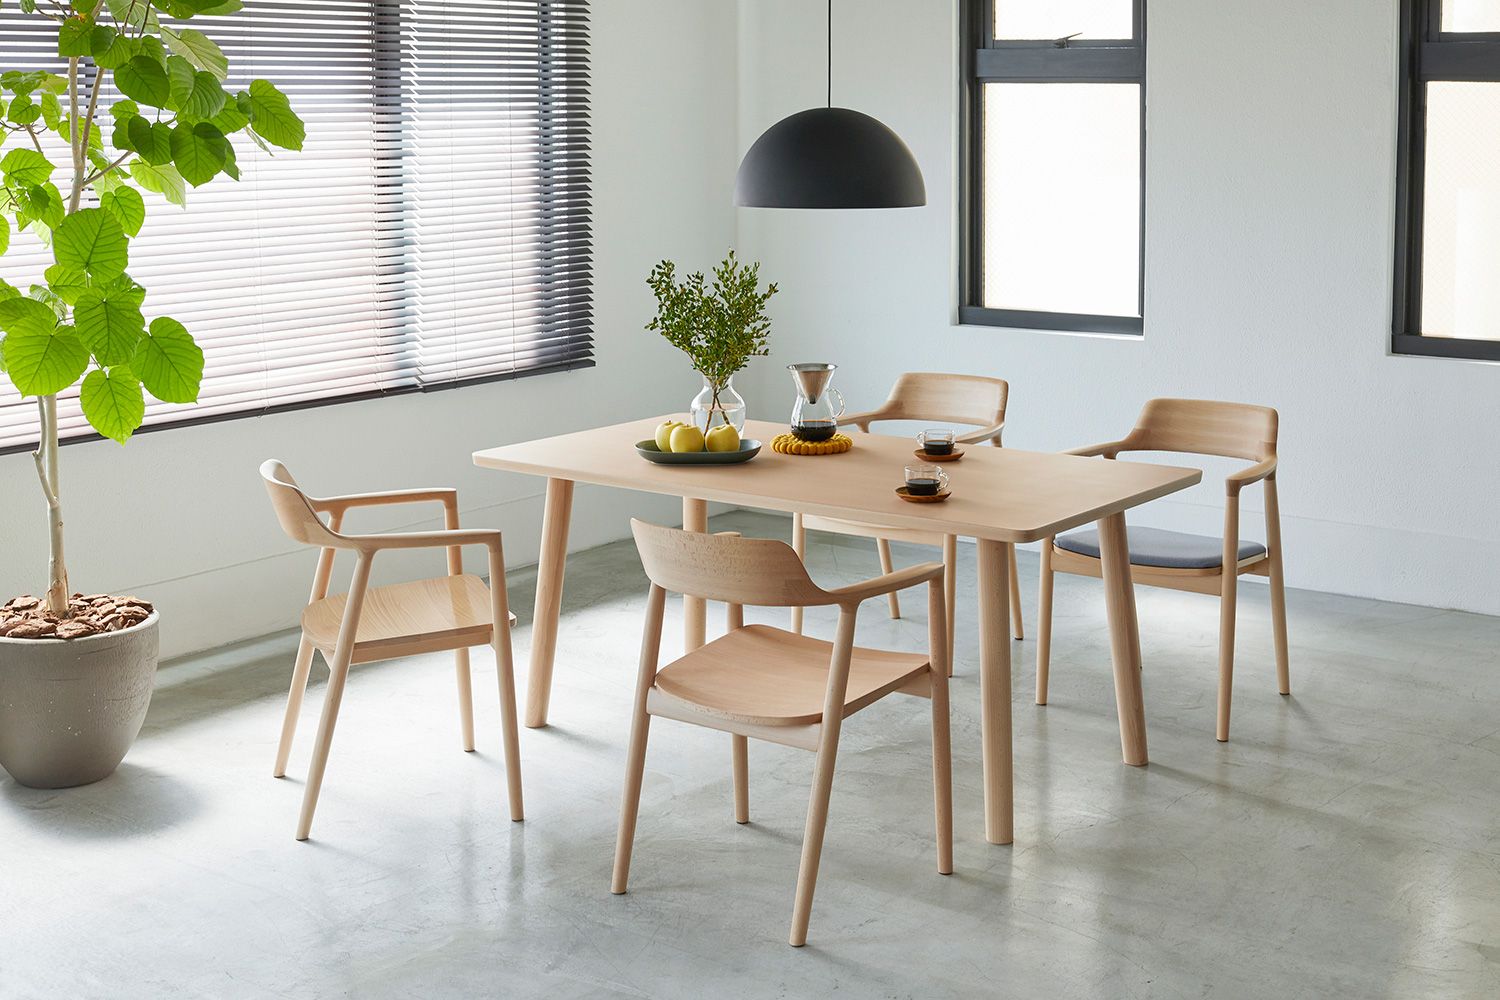 マルニ木工 ヒロシマ ダイニングテーブル 伸長式 同シリーズの仕様違いのイメージ画像です。